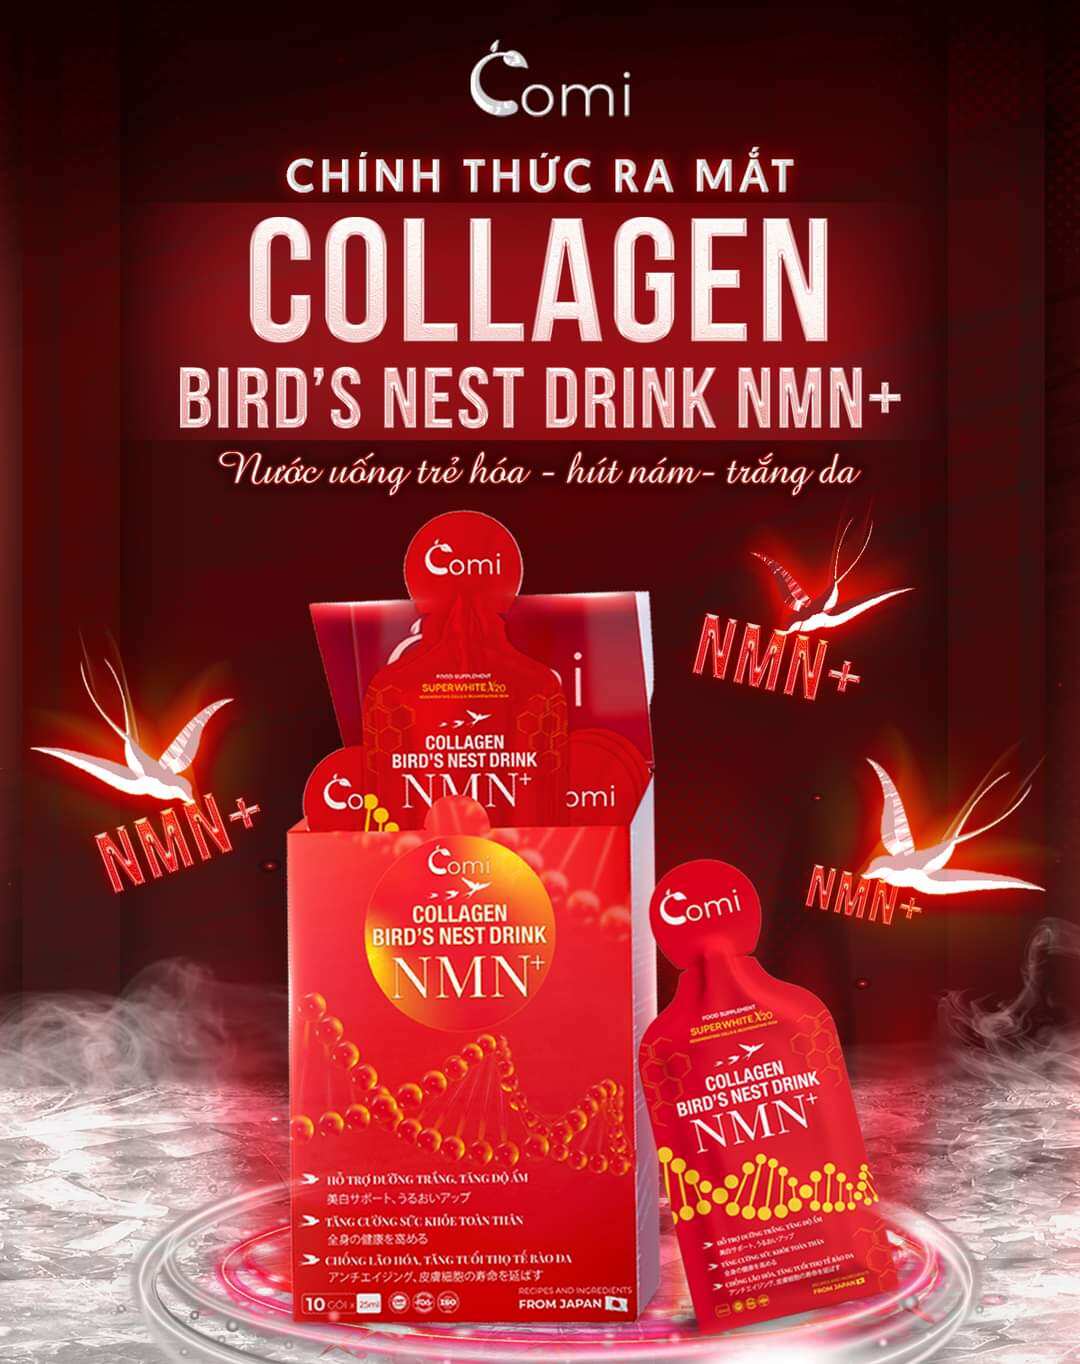 Collagen comi Yến NMN+